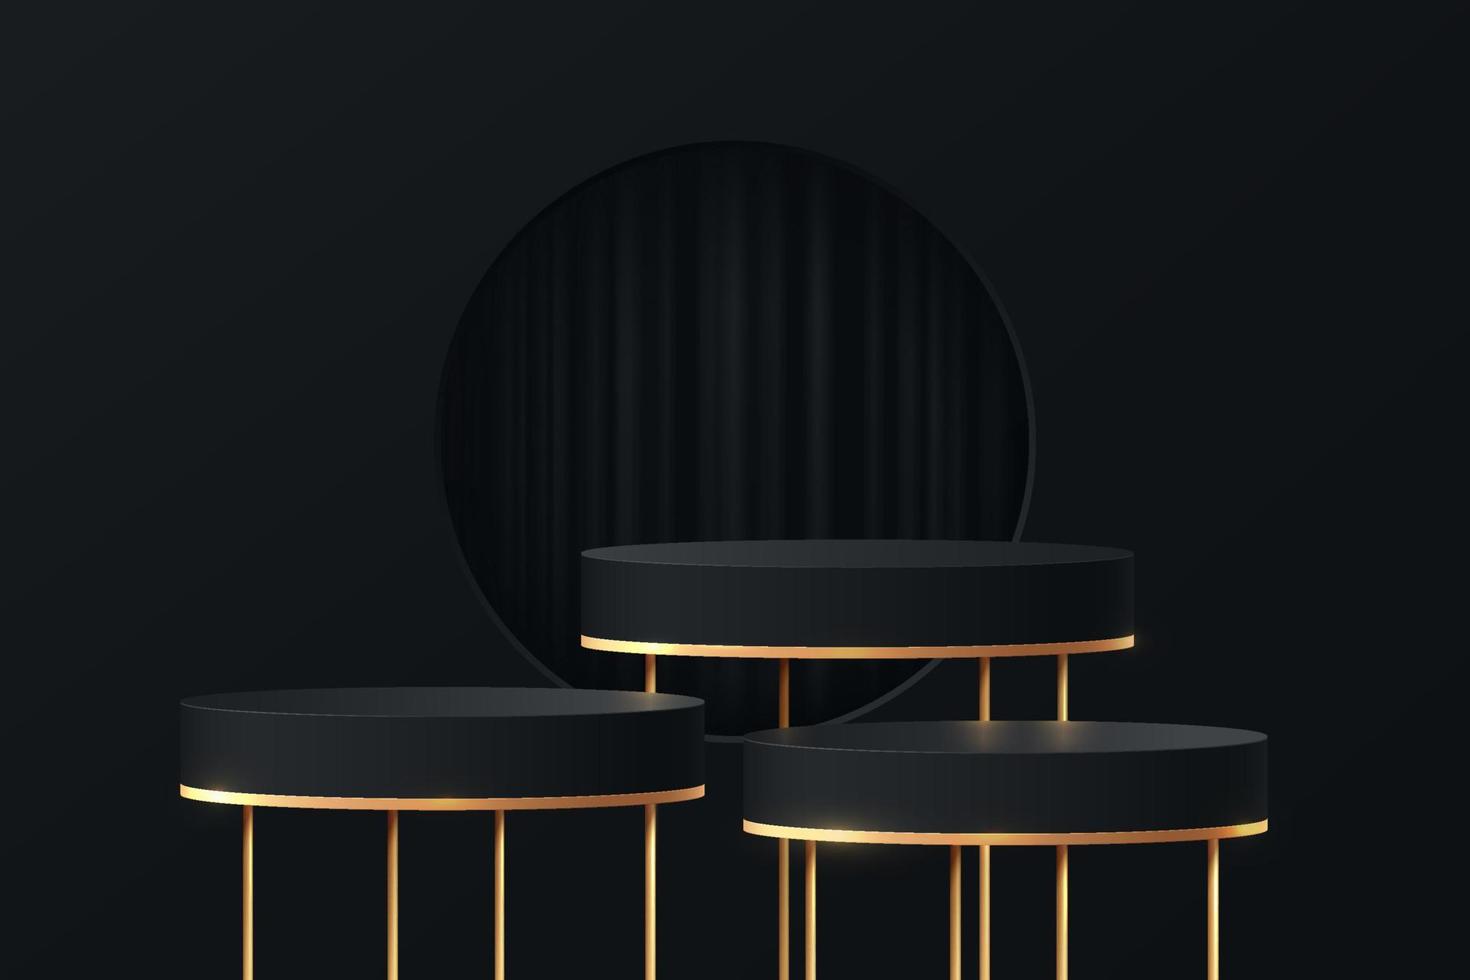 pedestal de cilindro realista preto, dourado ou pódio com cortina na janela do círculo. quarto de estúdio abstrato de vetor com plataforma geométrica 3d. cena de luxo para vitrine de produtos, exibição de promoção